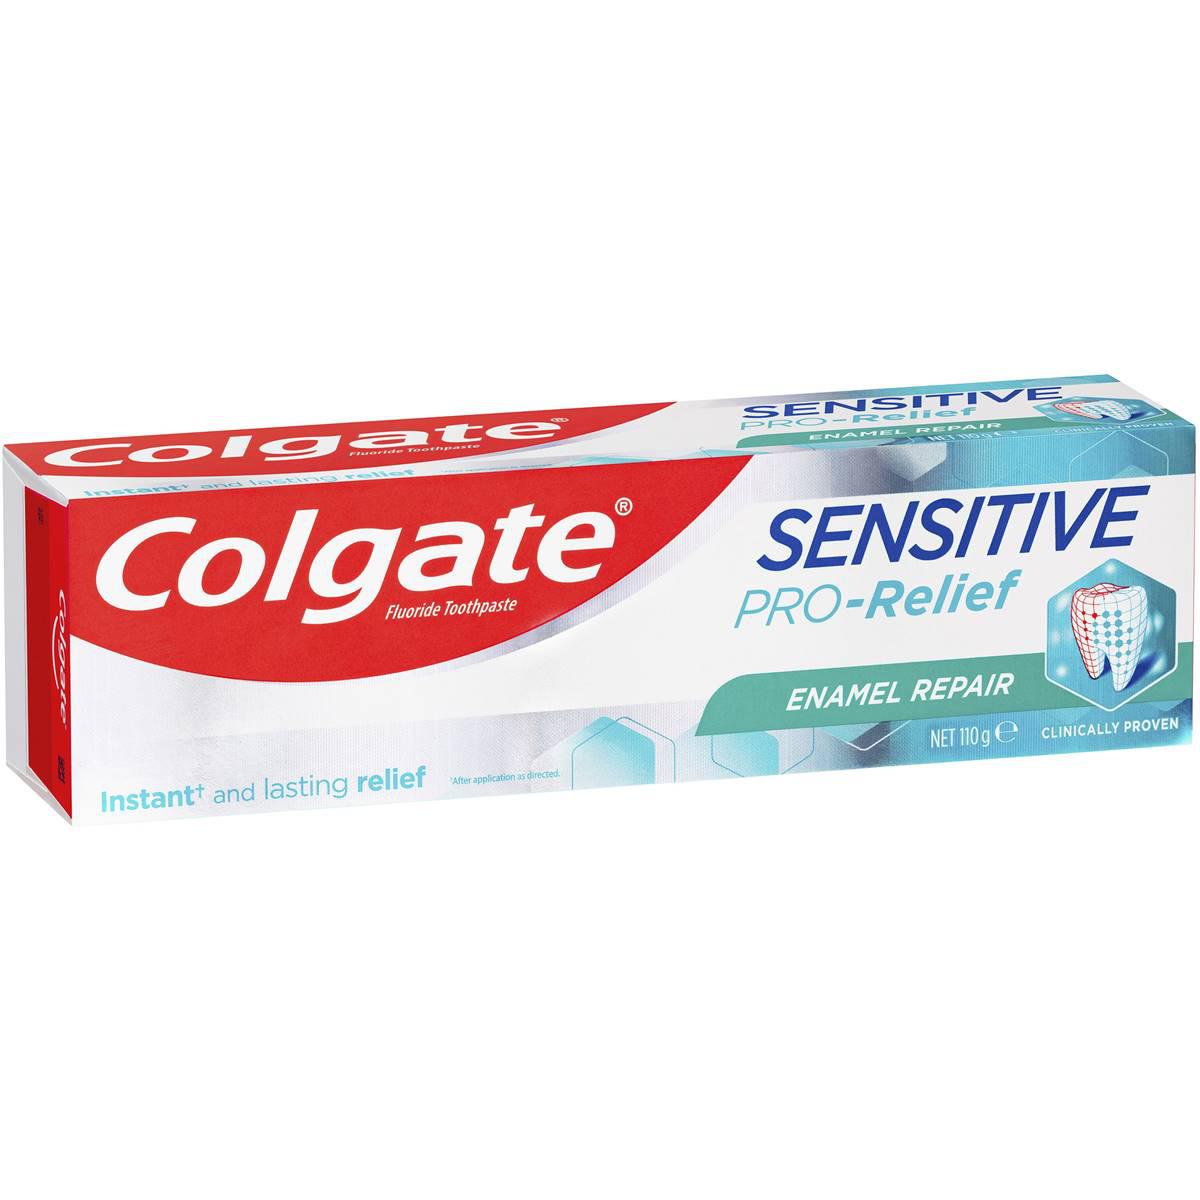 Colgate Sensitive Pro-relief Enamel Repair Teeth Pain Toothpaste 110g